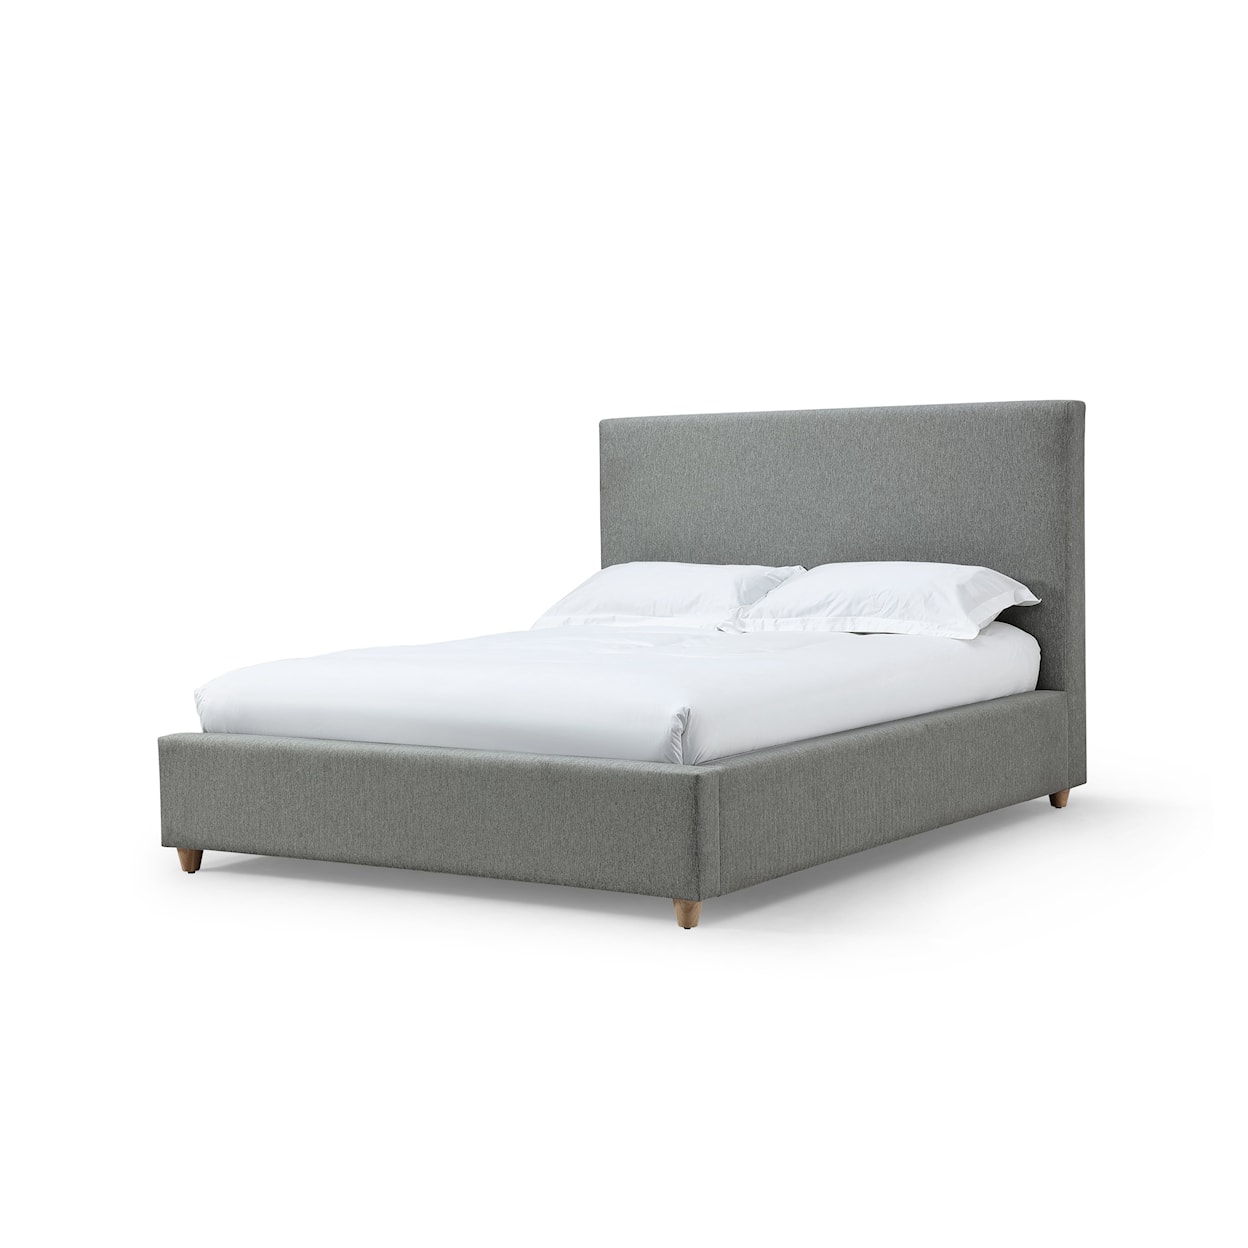 Modus International Olivia King Upholstered Platform Bed